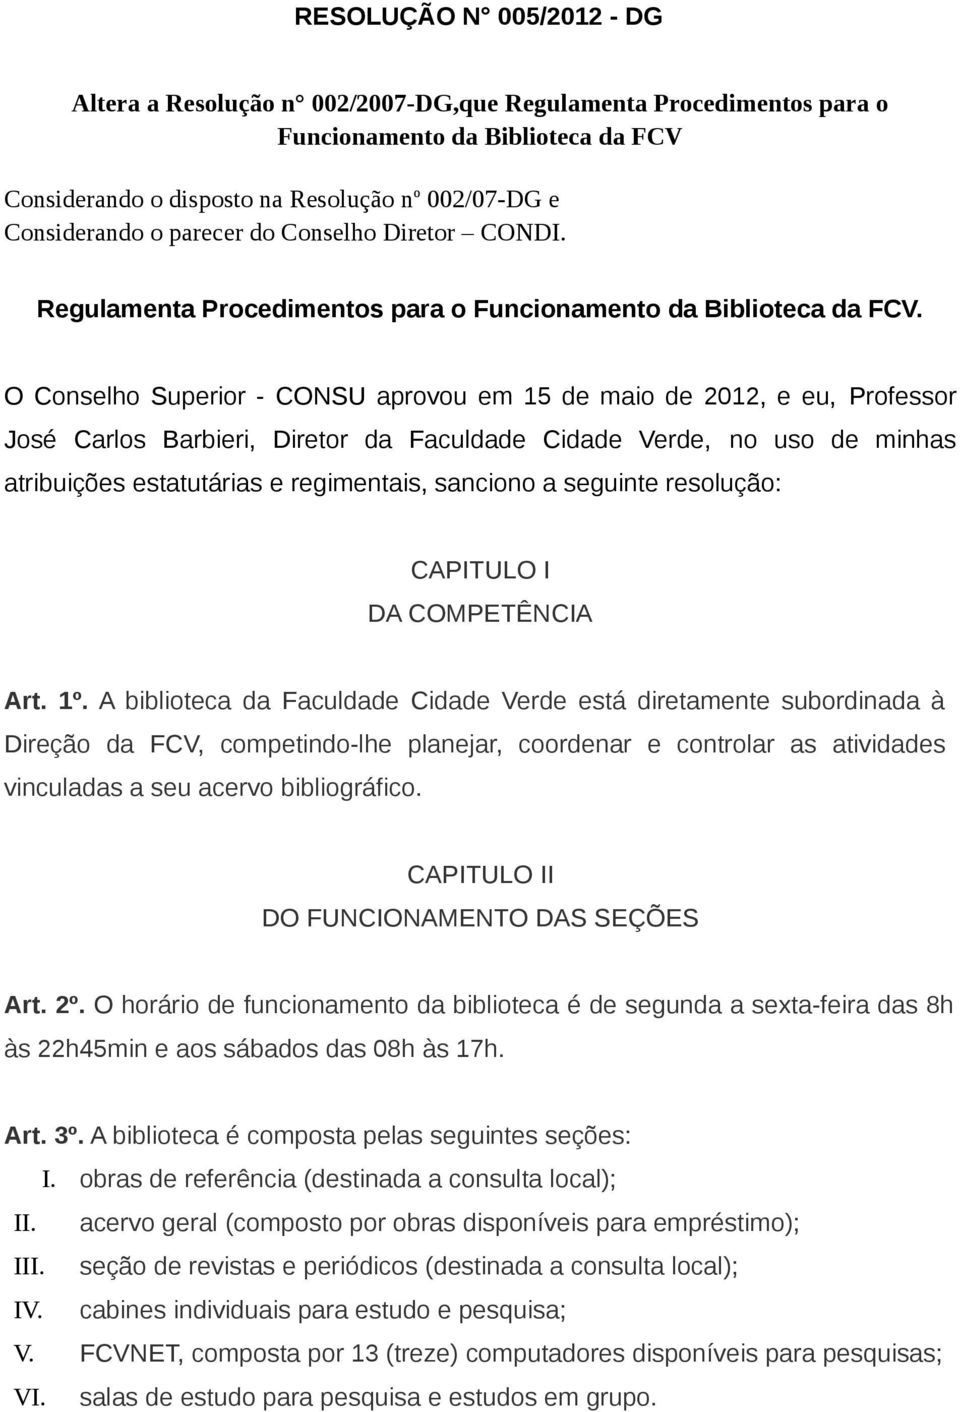 O Conselho Superior - CONSU aprovou em 15 de maio de 2012, e eu, Professor José Carlos Barbieri, Diretor da Faculdade Cidade Verde, no uso de minhas atribuições estatutárias e regimentais, sanciono a